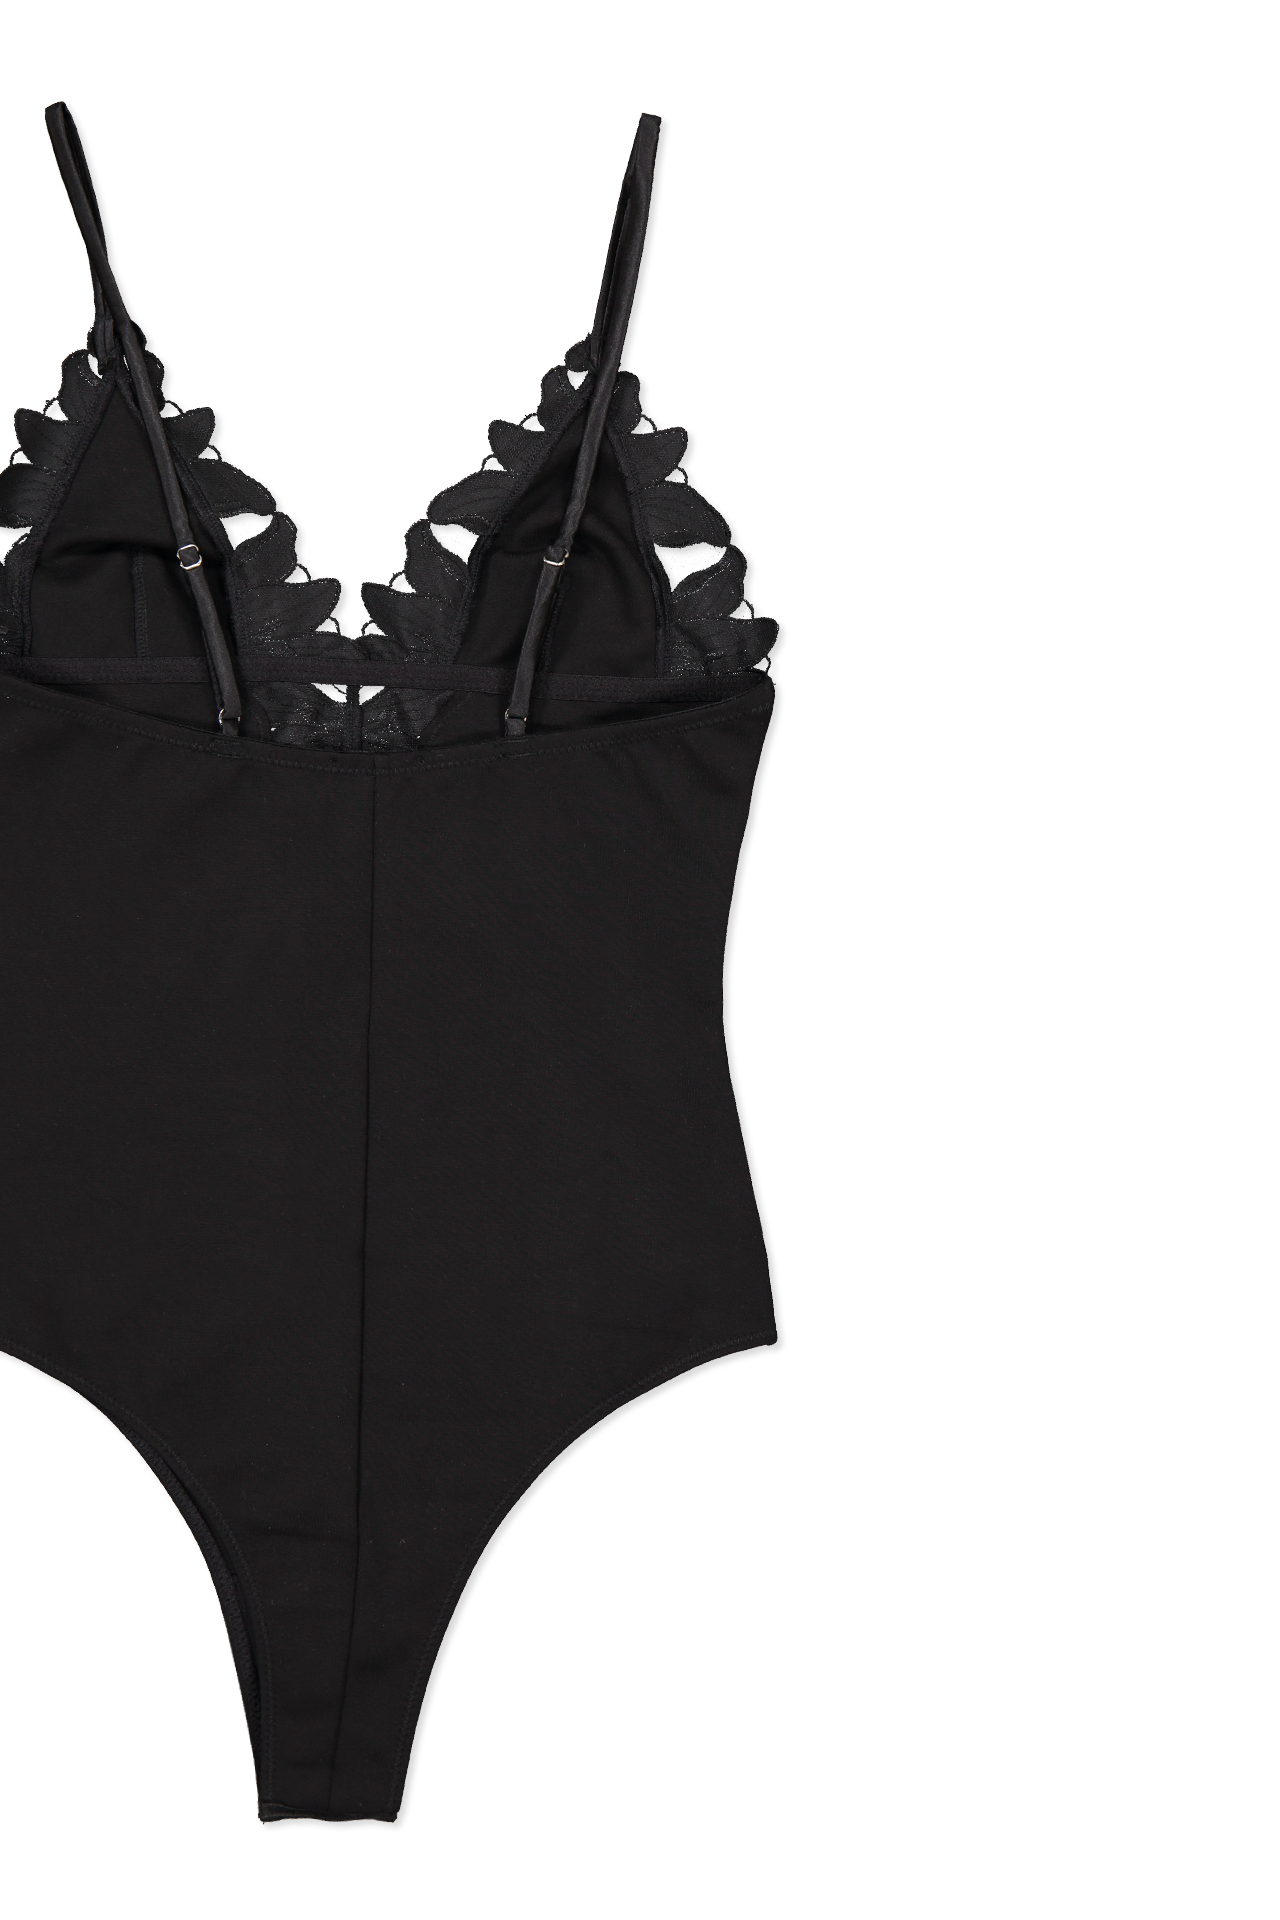 ATM Women's V-Neck Tank Bodysuit | A.K. Rikk's